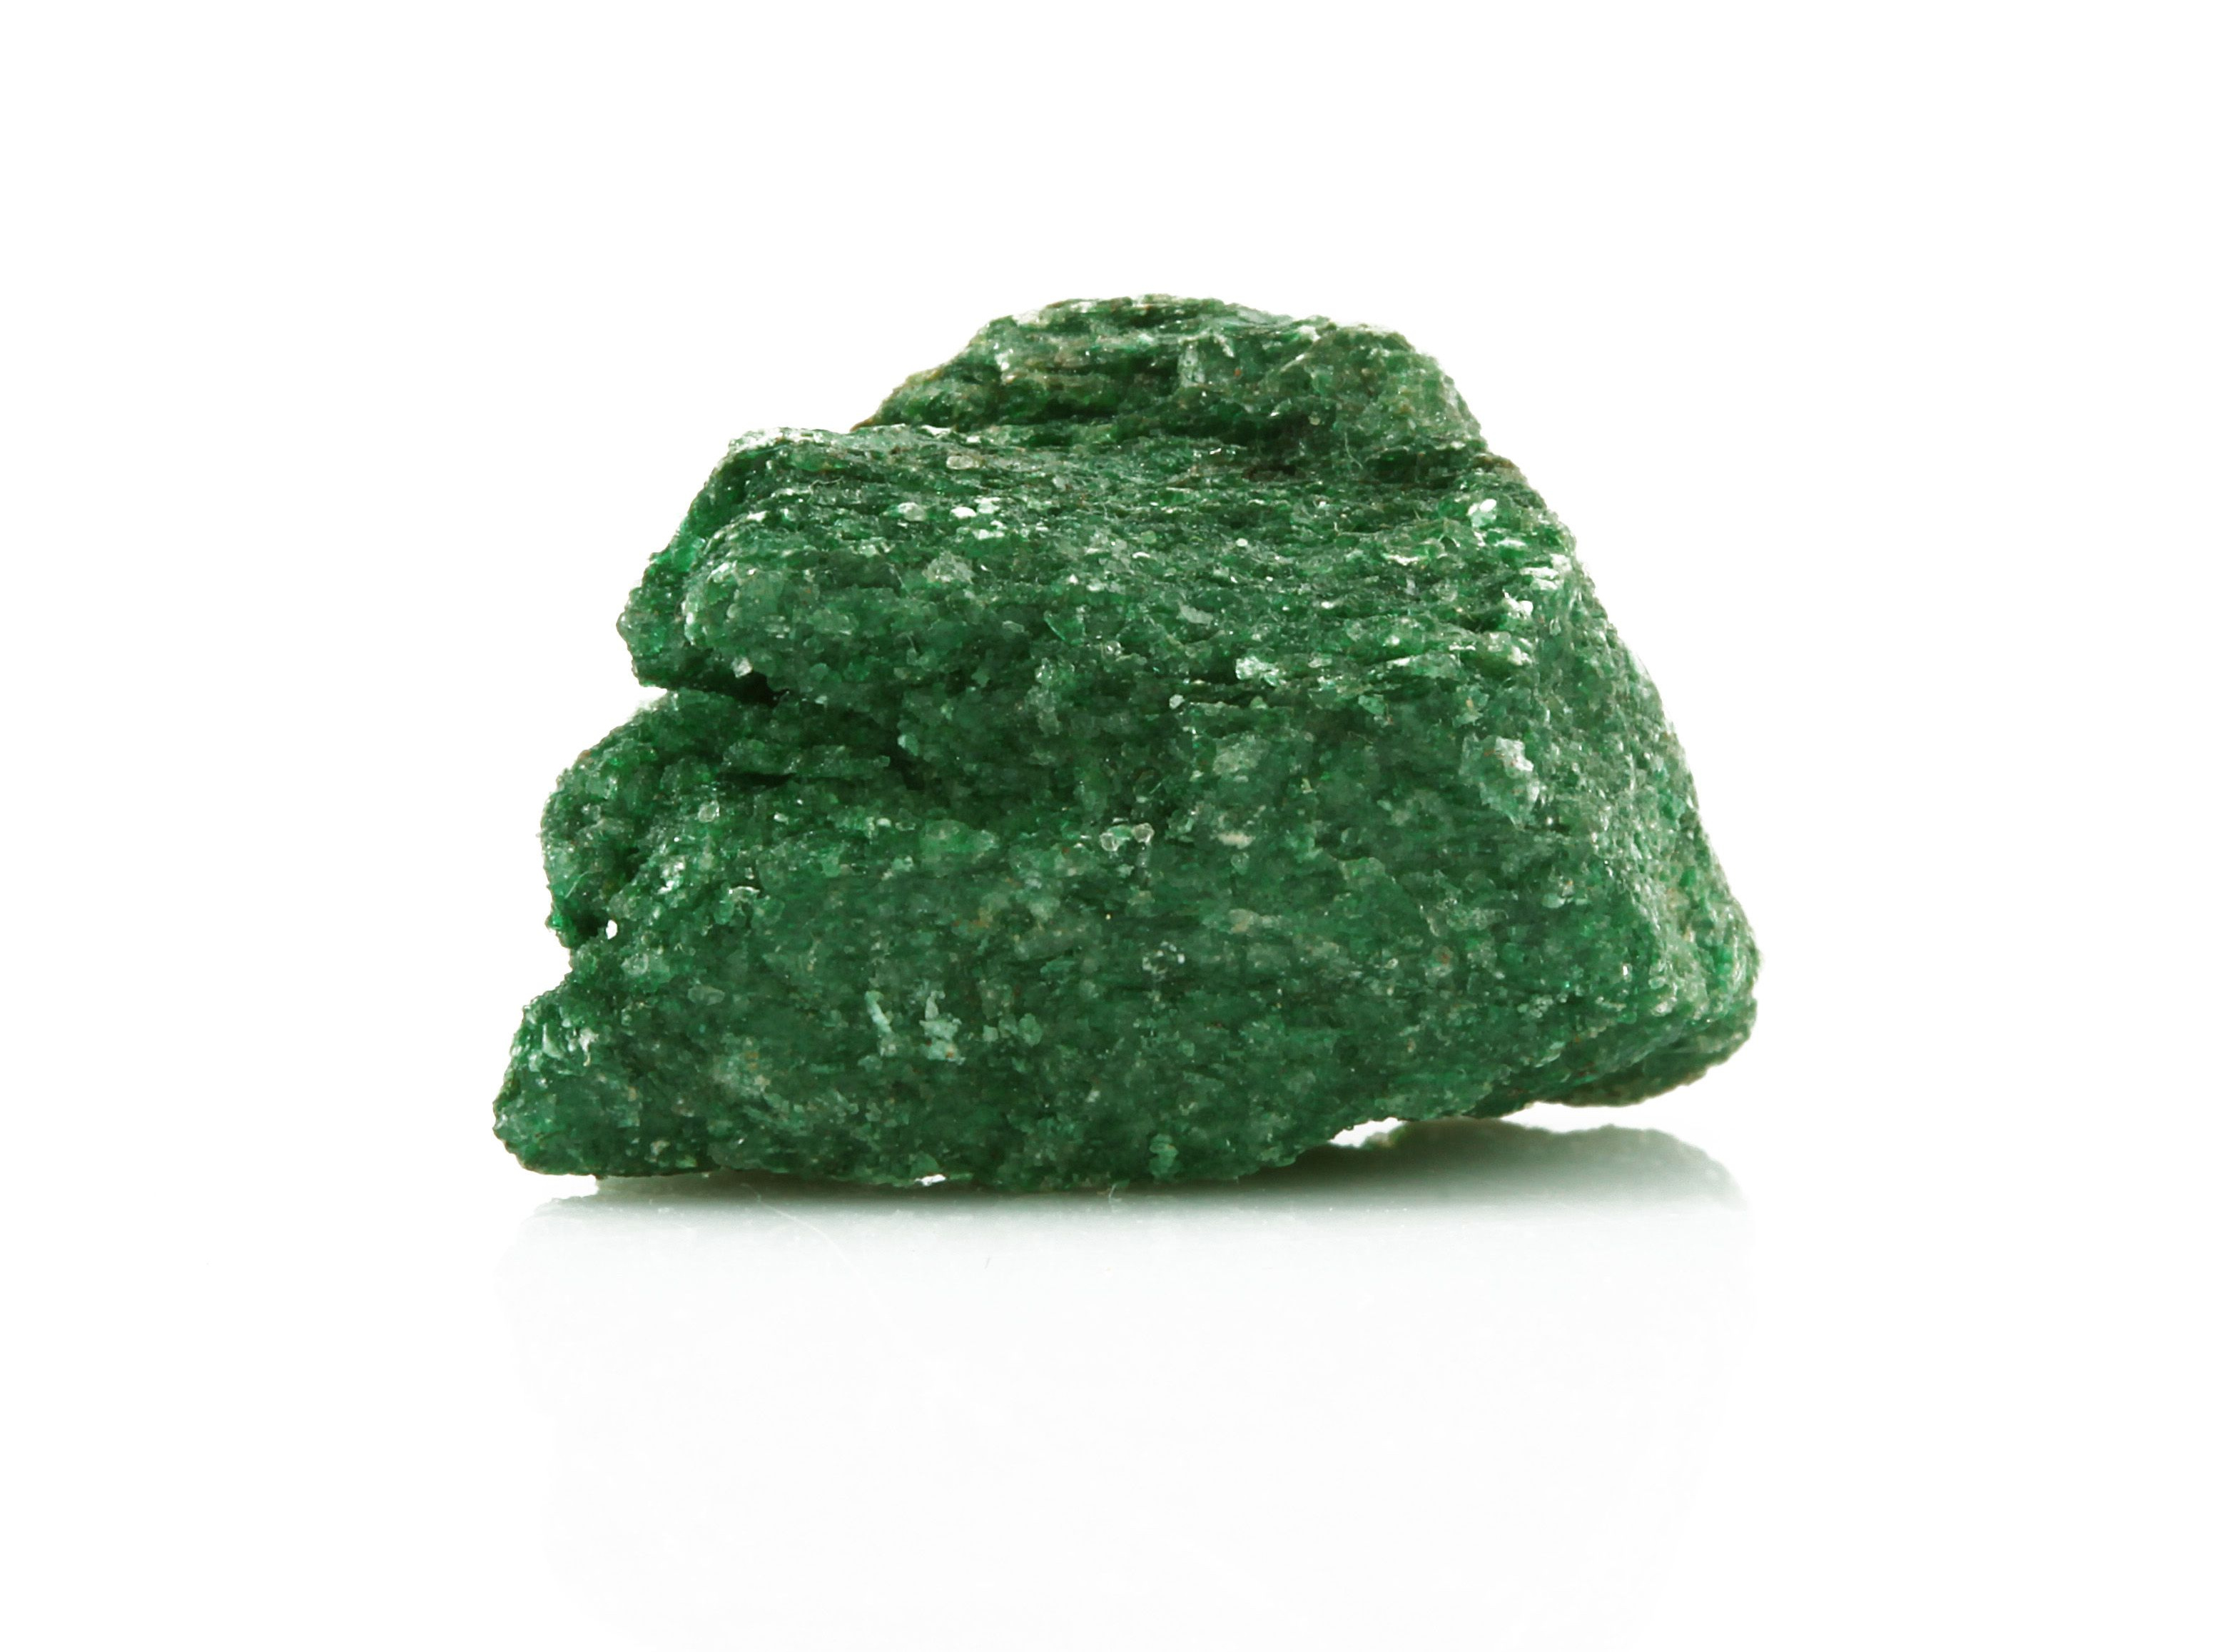 Emerald birthstone